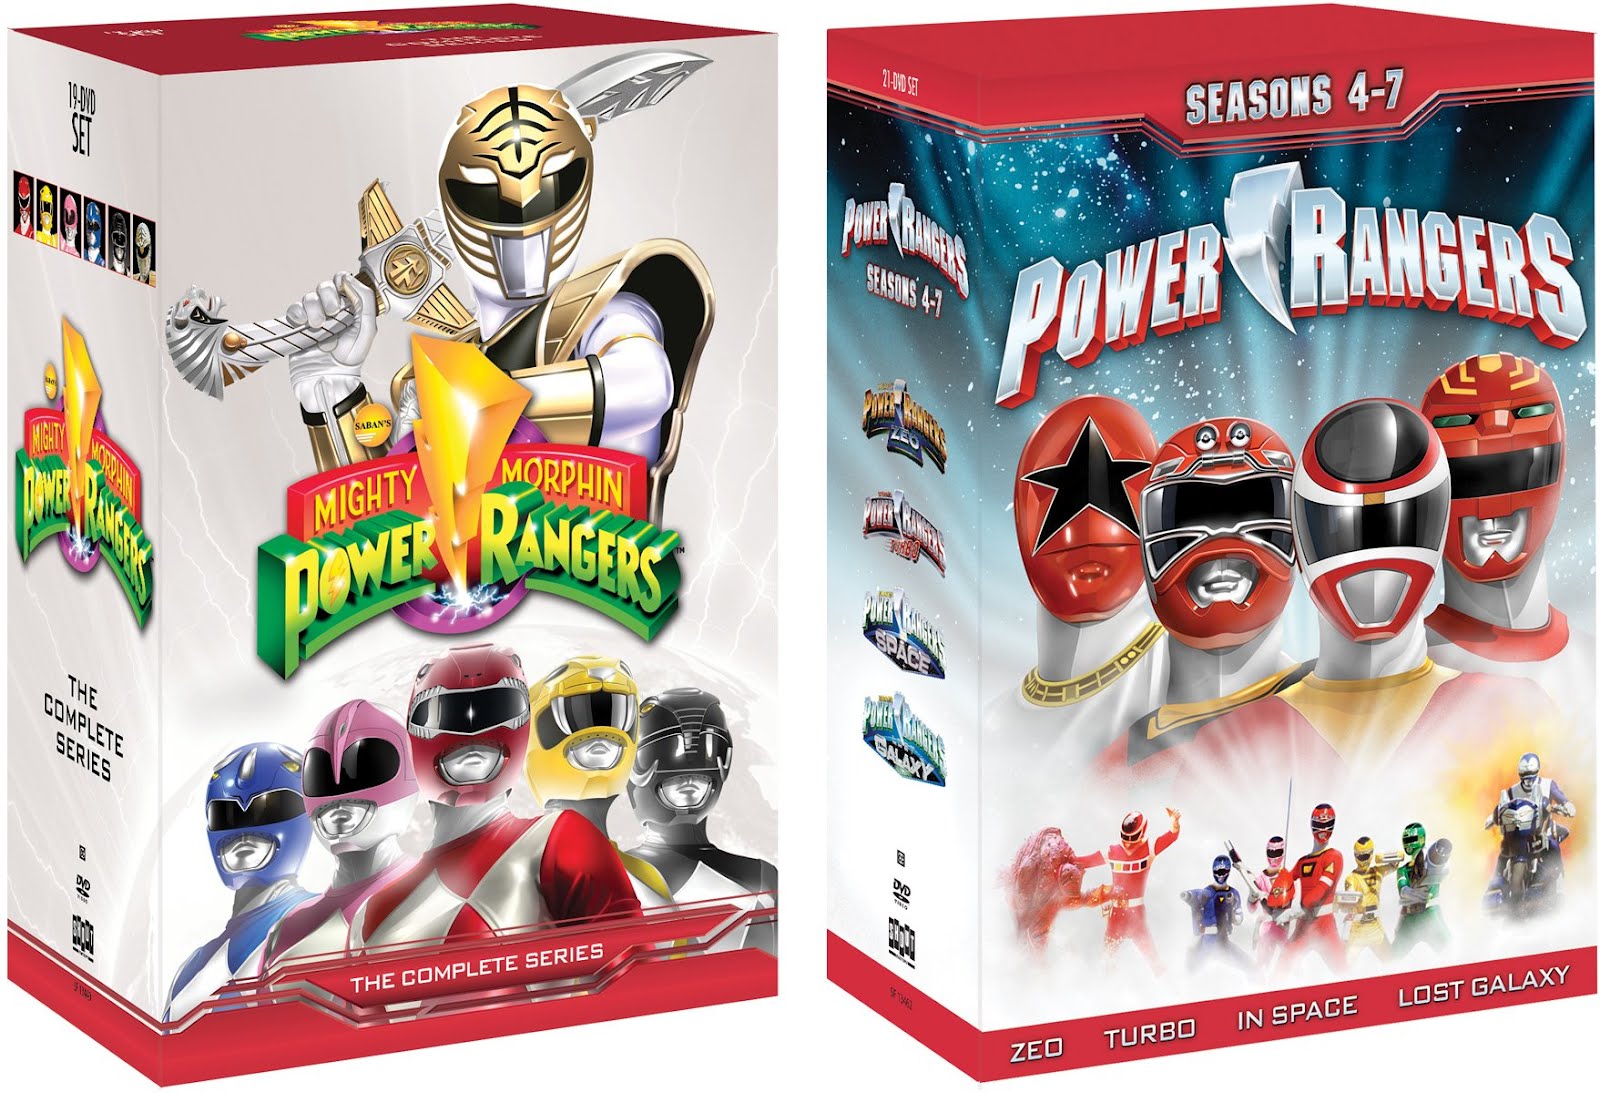 13 пауэр. Могучие рейнджеры Потерянная Галактика. Power Rangers DVD collection. Могучие рейнджеры DVD диск. Могучие рейнджеры Потерянная Галактика игрушки.